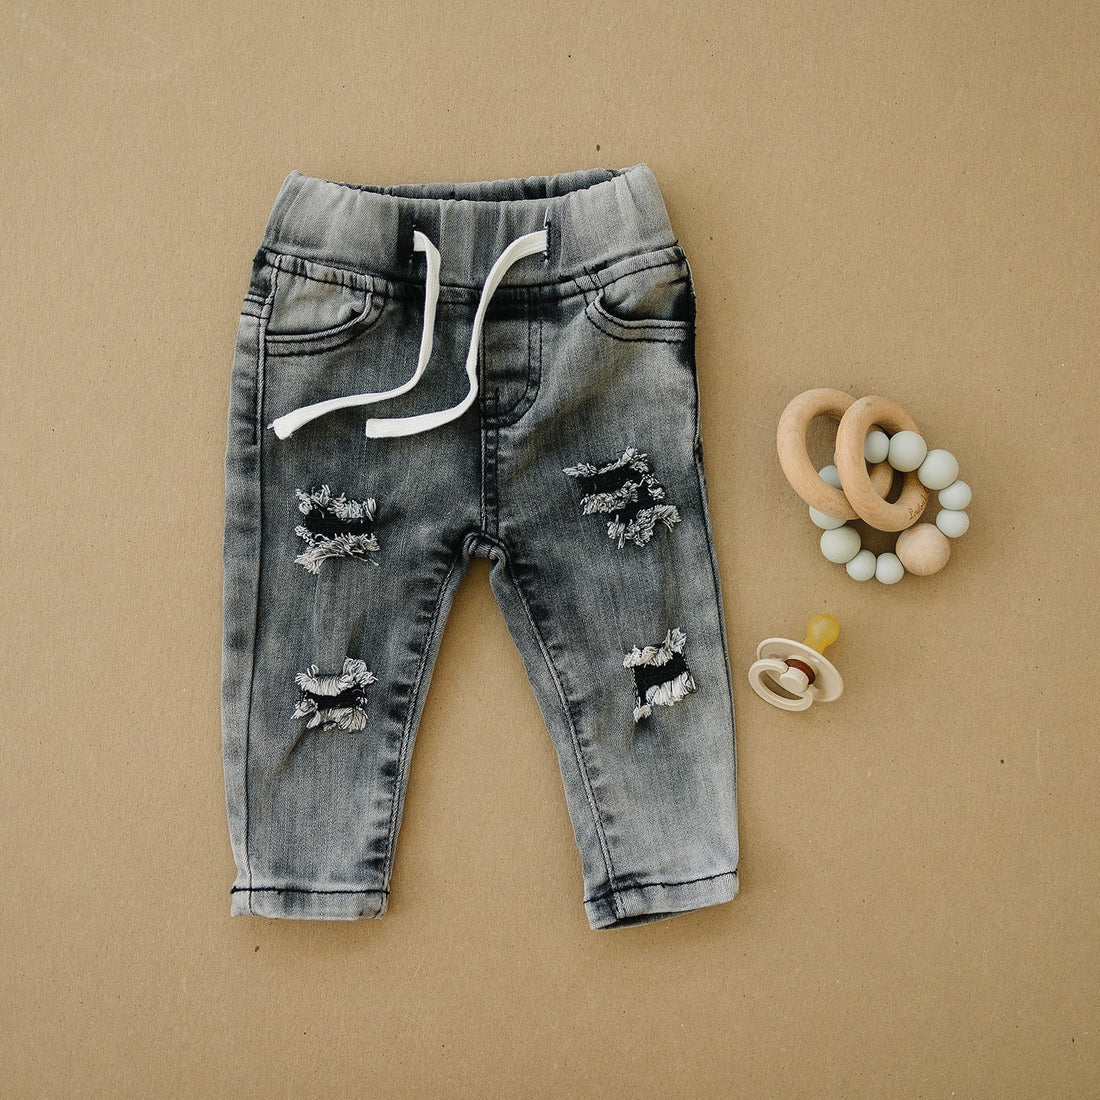 Ashton "Ripped" Jeans